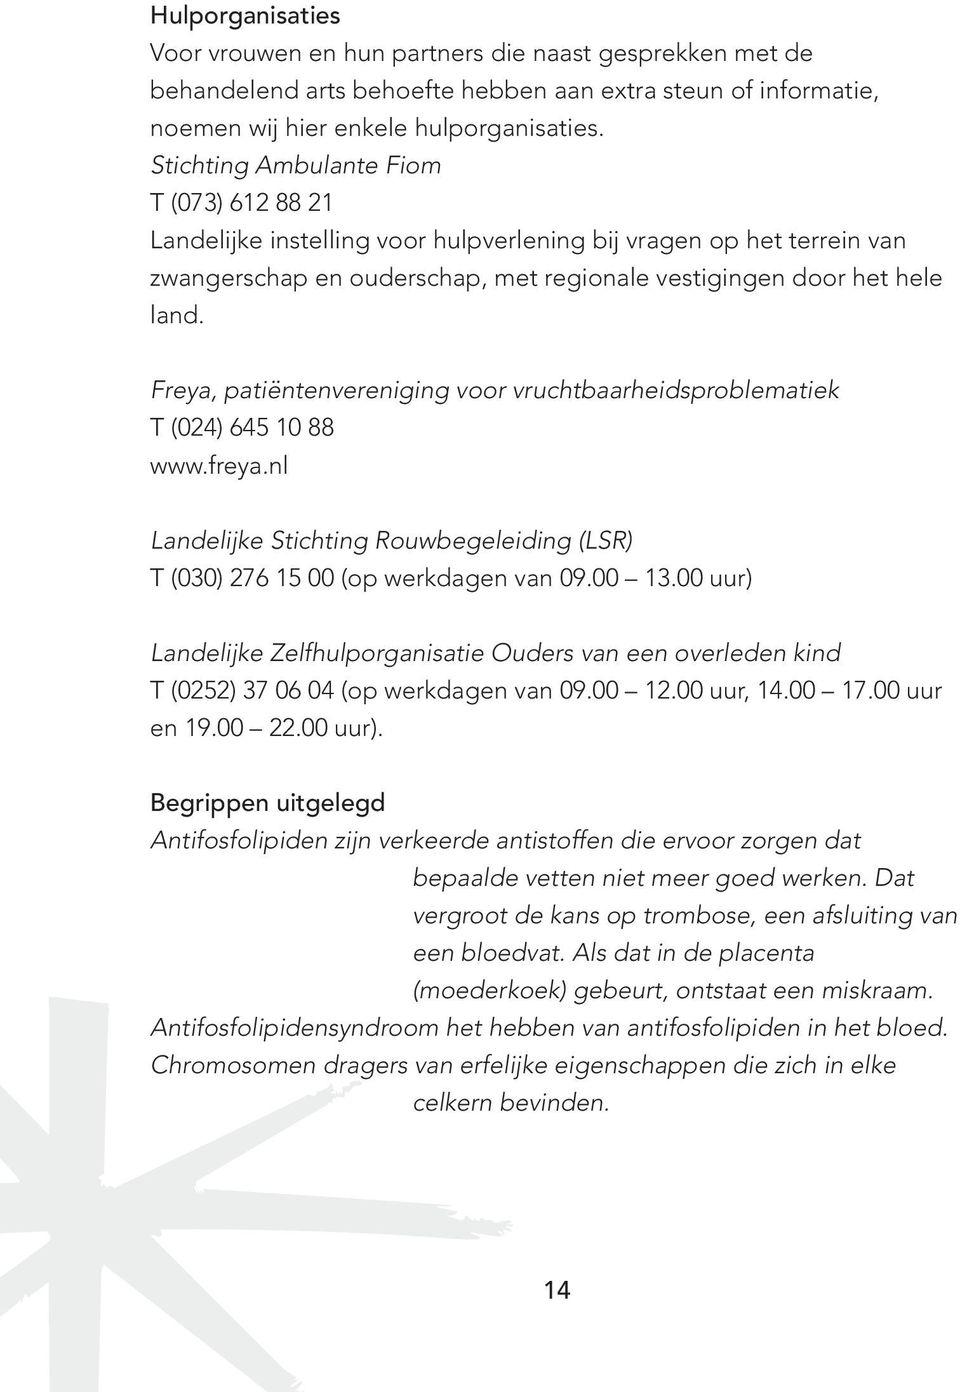 Freya, patiëntenvereniging voor vruchtbaarheidsproblematiek T (024) 645 10 88 www.freya.nl Landelijke Stichting Rouwbegeleiding (LSR) T (030) 276 15 00 (op werkdagen van 09.00 13.